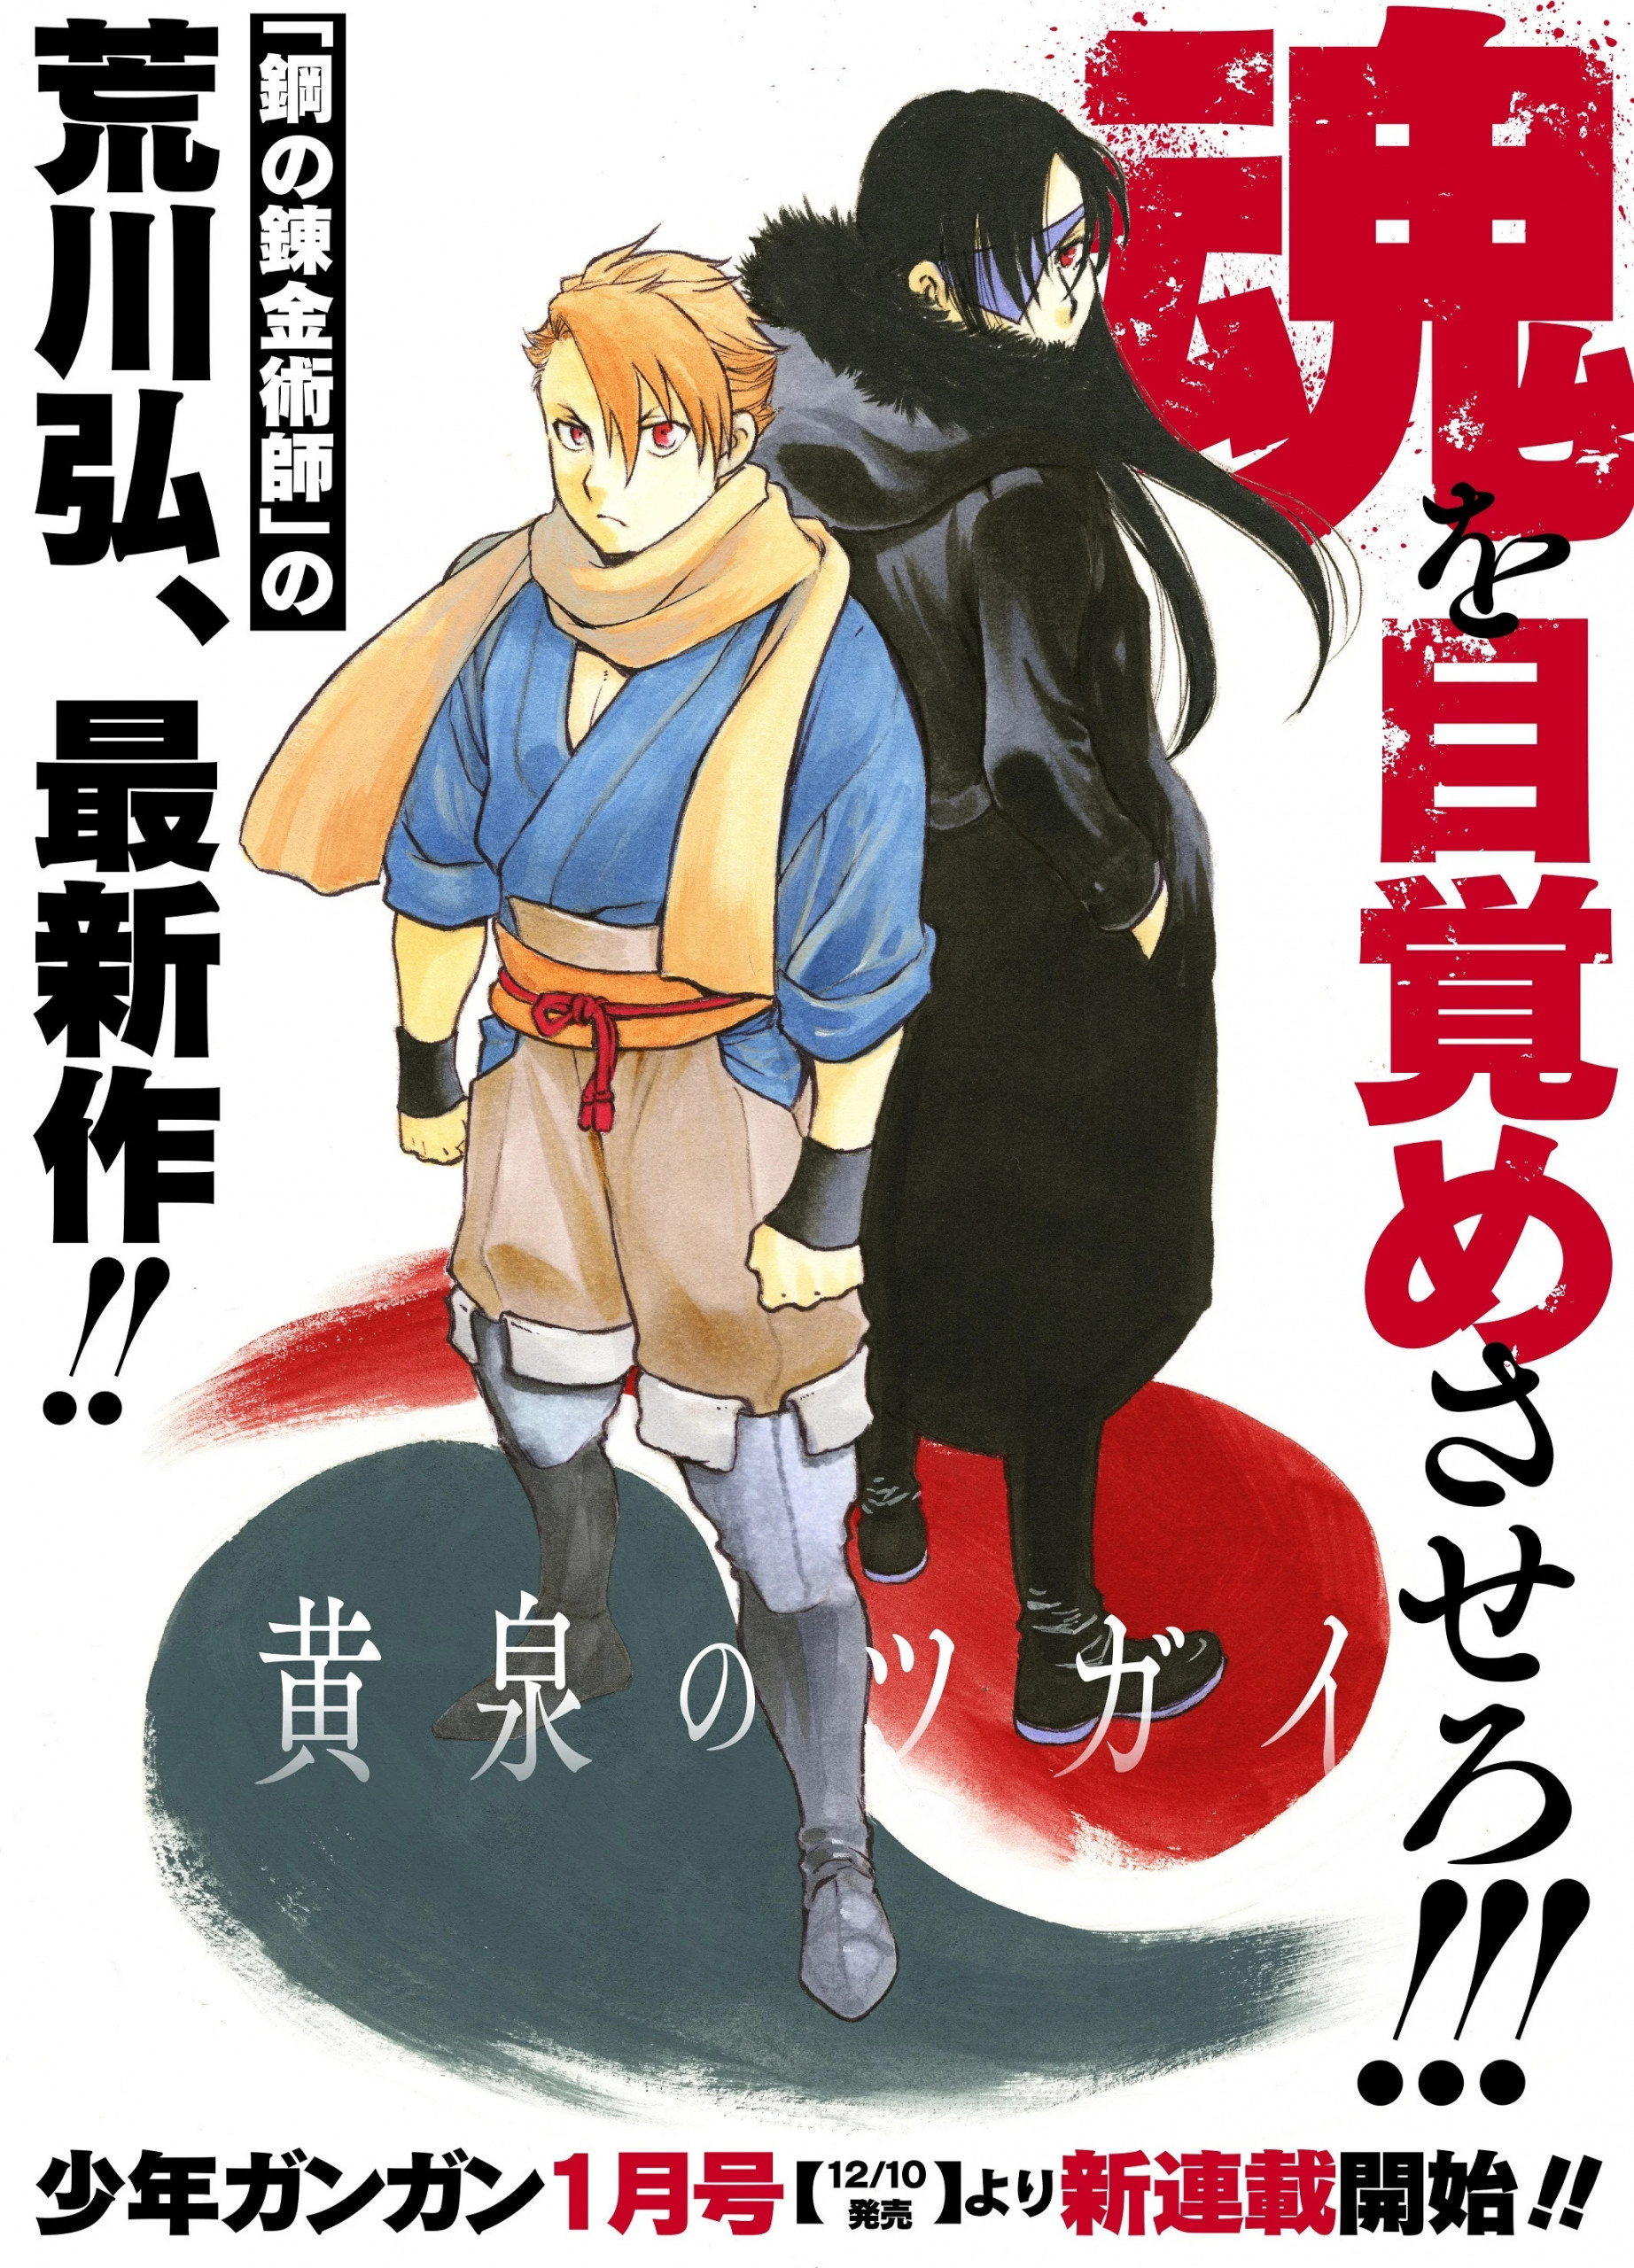 Skaberen af Fullmetal Alchemist, Hiromu Arakawa, udgiver ny Yomi no Tsugai manga den 10 december